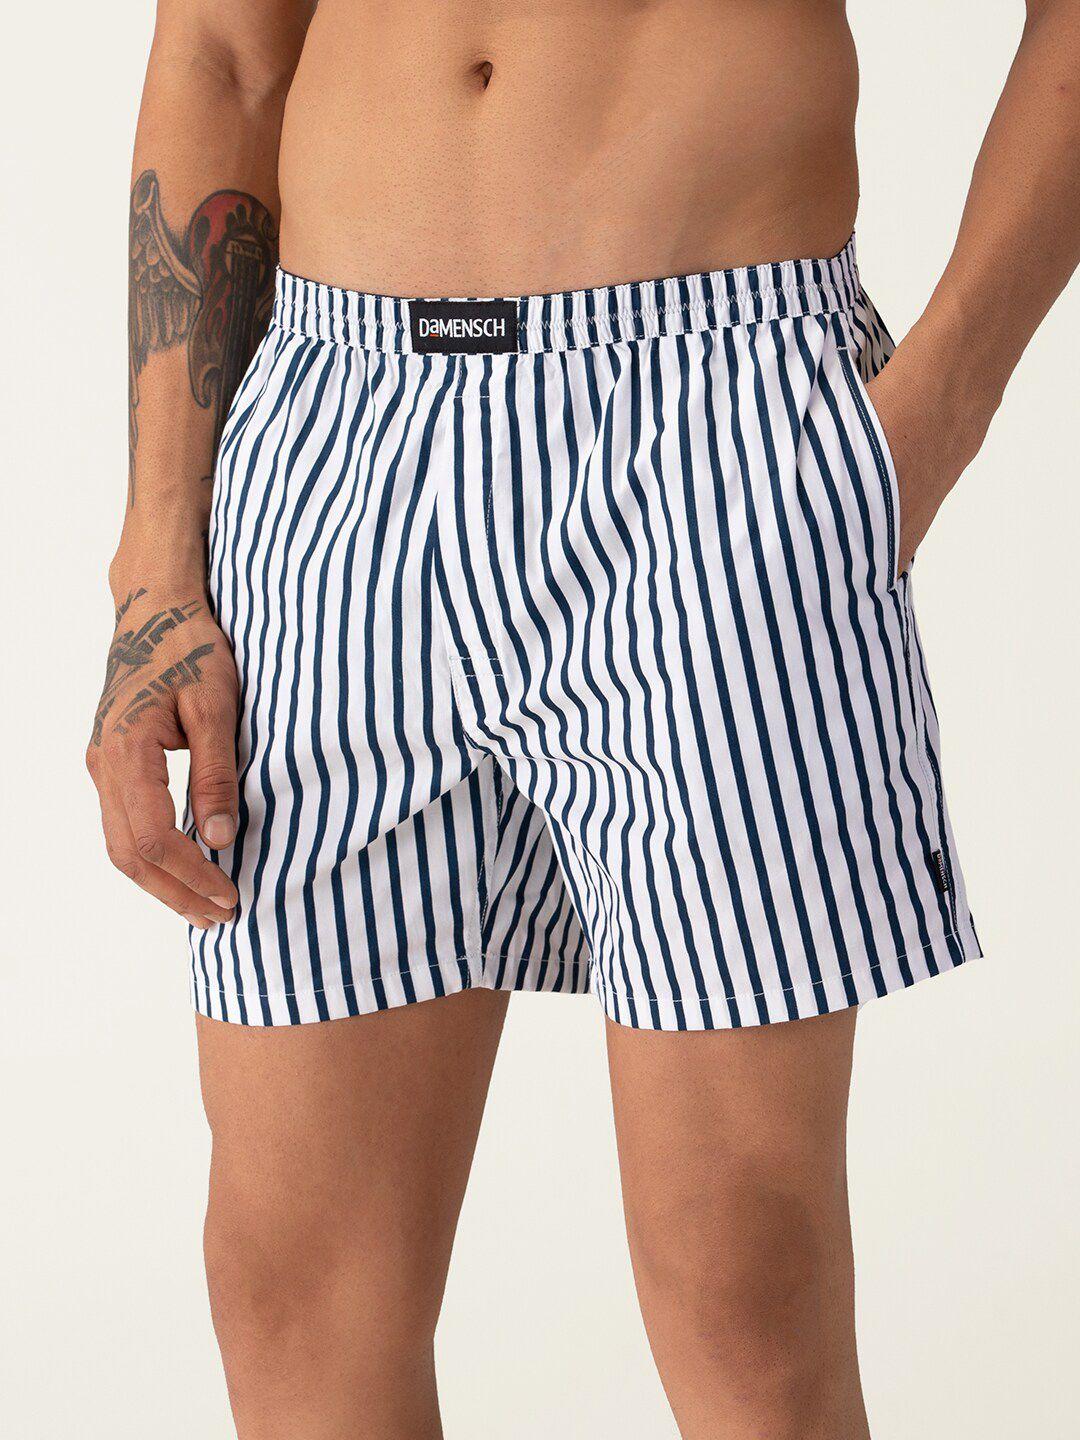 damensch breeeze men white & navy blue striped pure cotton ultra-light boxers dam-stp-lbx-csw